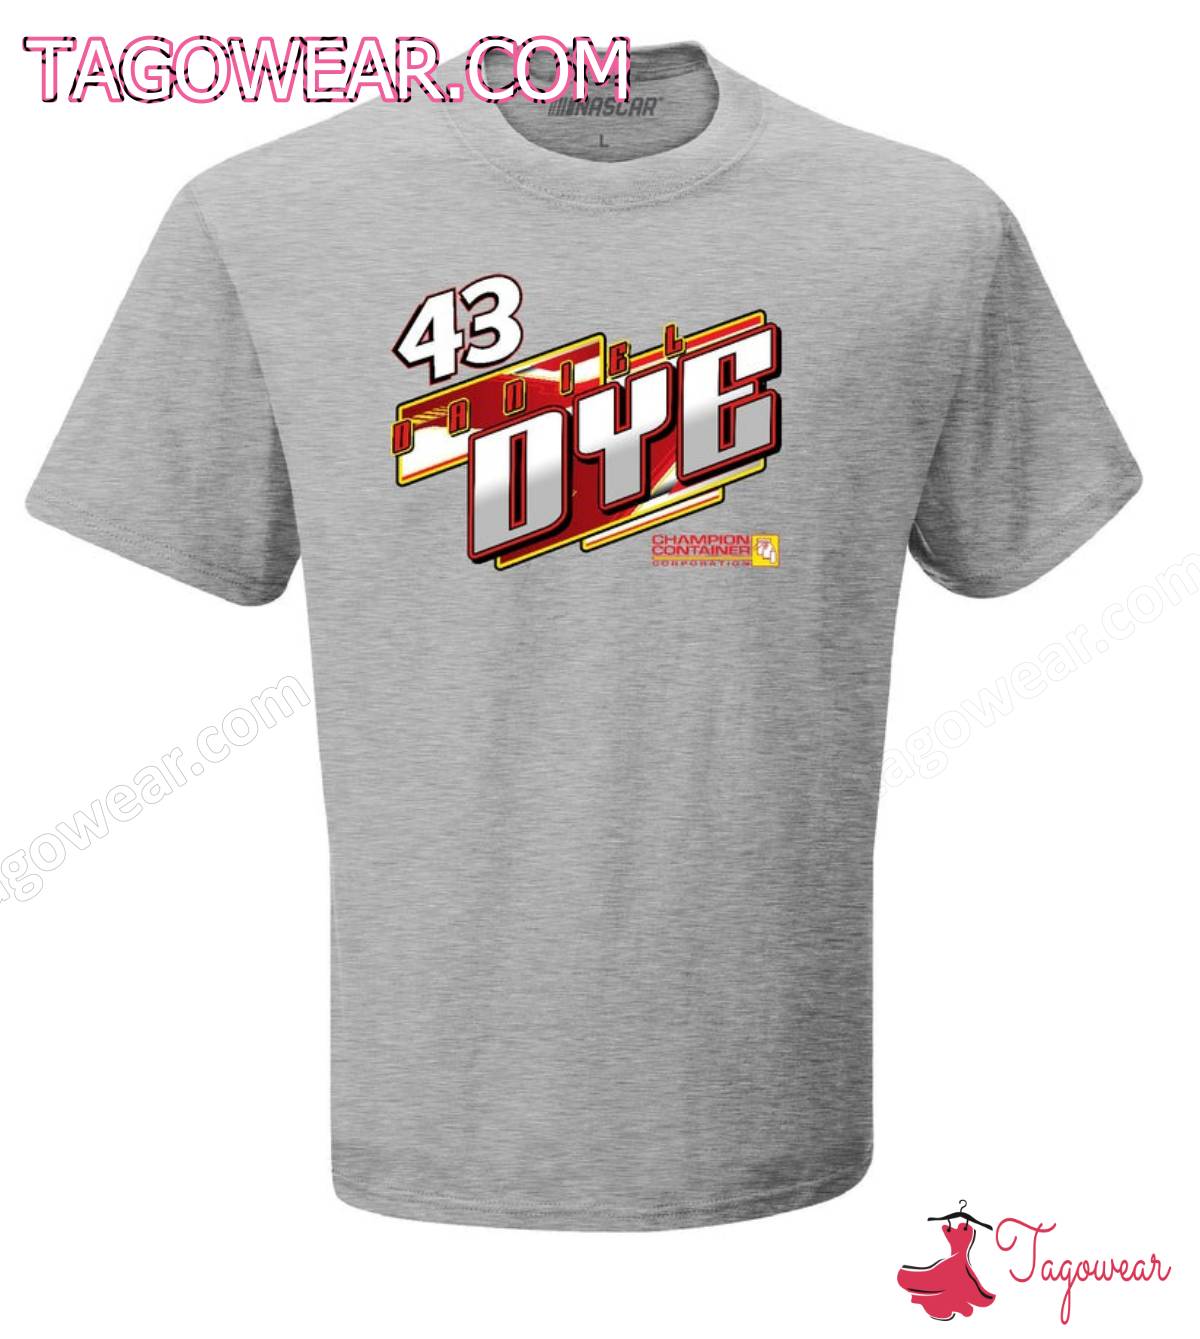 43 Daniel Dye Nascar Gms Racing Shirt